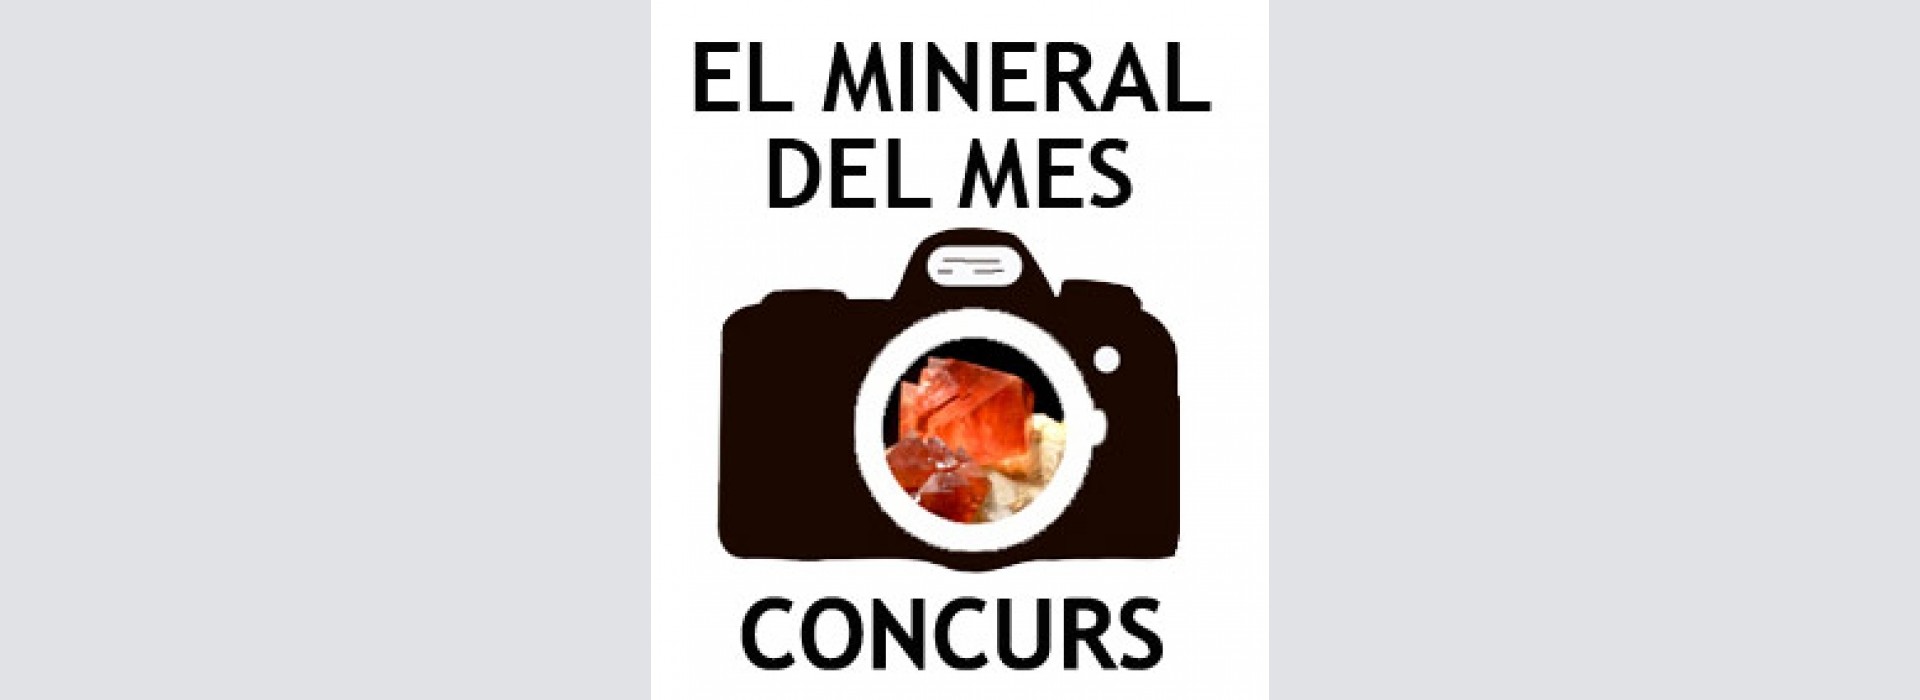 Concurs “El mineral del mes” - Març 2018.